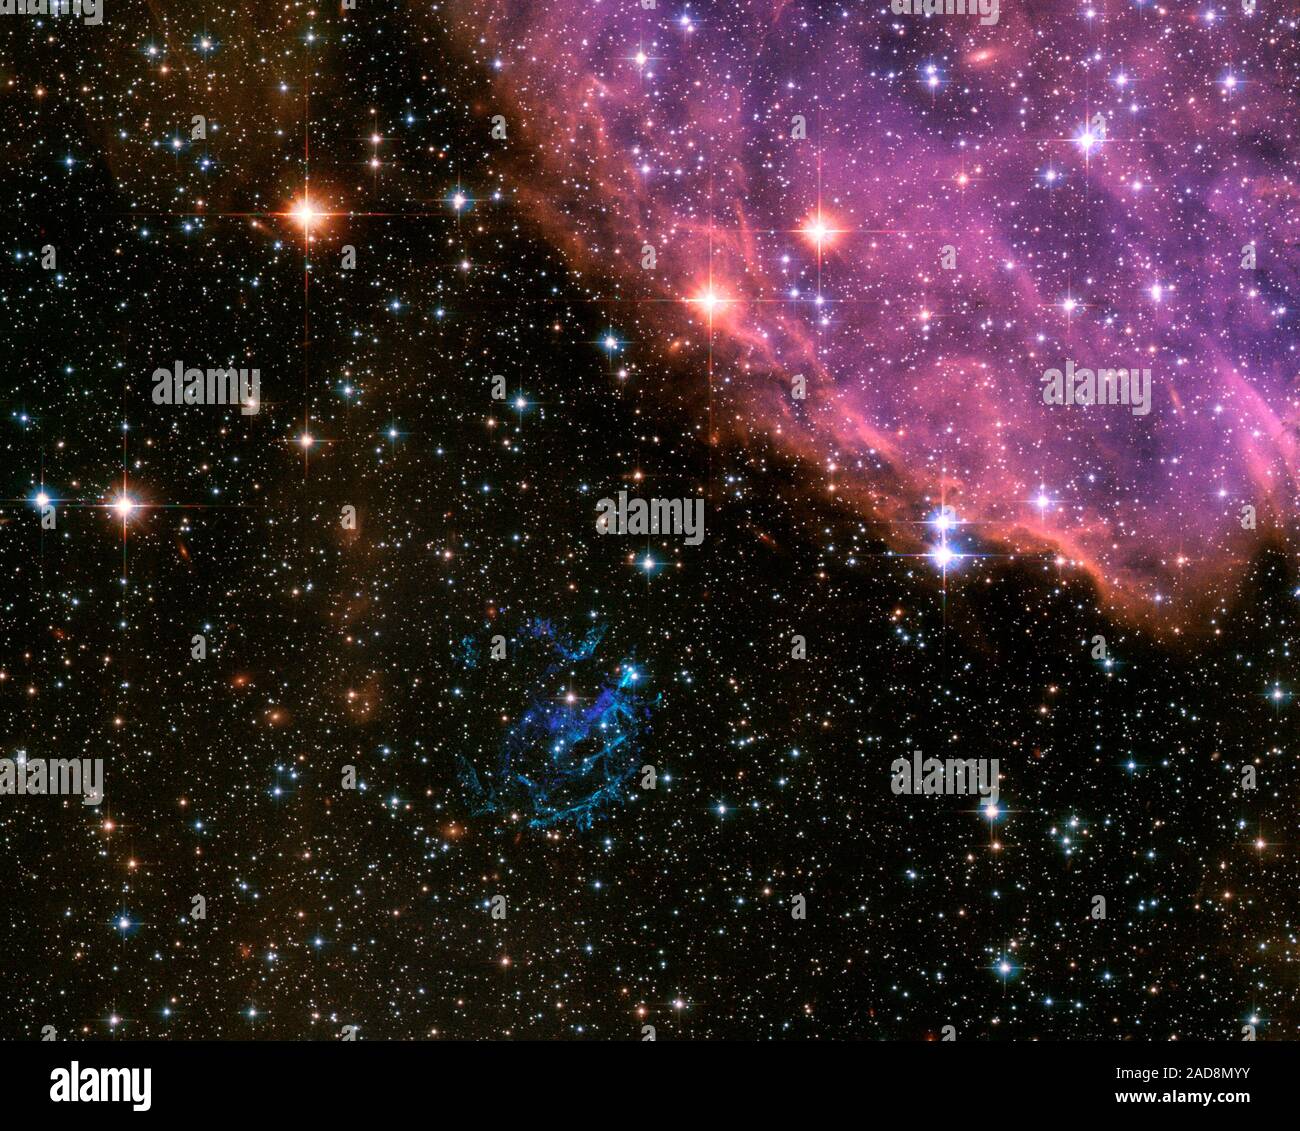 Reminiscenza di un U.S. Il 4 luglio il Giorno di Indipendenza celebrazione, qui è un NASA Hubble Space Telescope immagine di una esplosione cosmica che è abbastanza simile a fuochi d'artificio sulla terra. Nella vicina galassia, la piccola Magellanic Cloud, una stella massiccia è esplosa come supernova e iniziato a dissipare i suoi interni in una spettacolare esibizione di filamenti colorati. La supernova superstiti (SNR), noto come 'E0102' per brevi, è il blu verdastro guscio di detriti appena al di sotto del centro dell'immagine di Hubble. Il suo nome deriva dalla sua collocazione catalogati (o coordinate) nella sfera celeste. Più formalmente noto Foto Stock